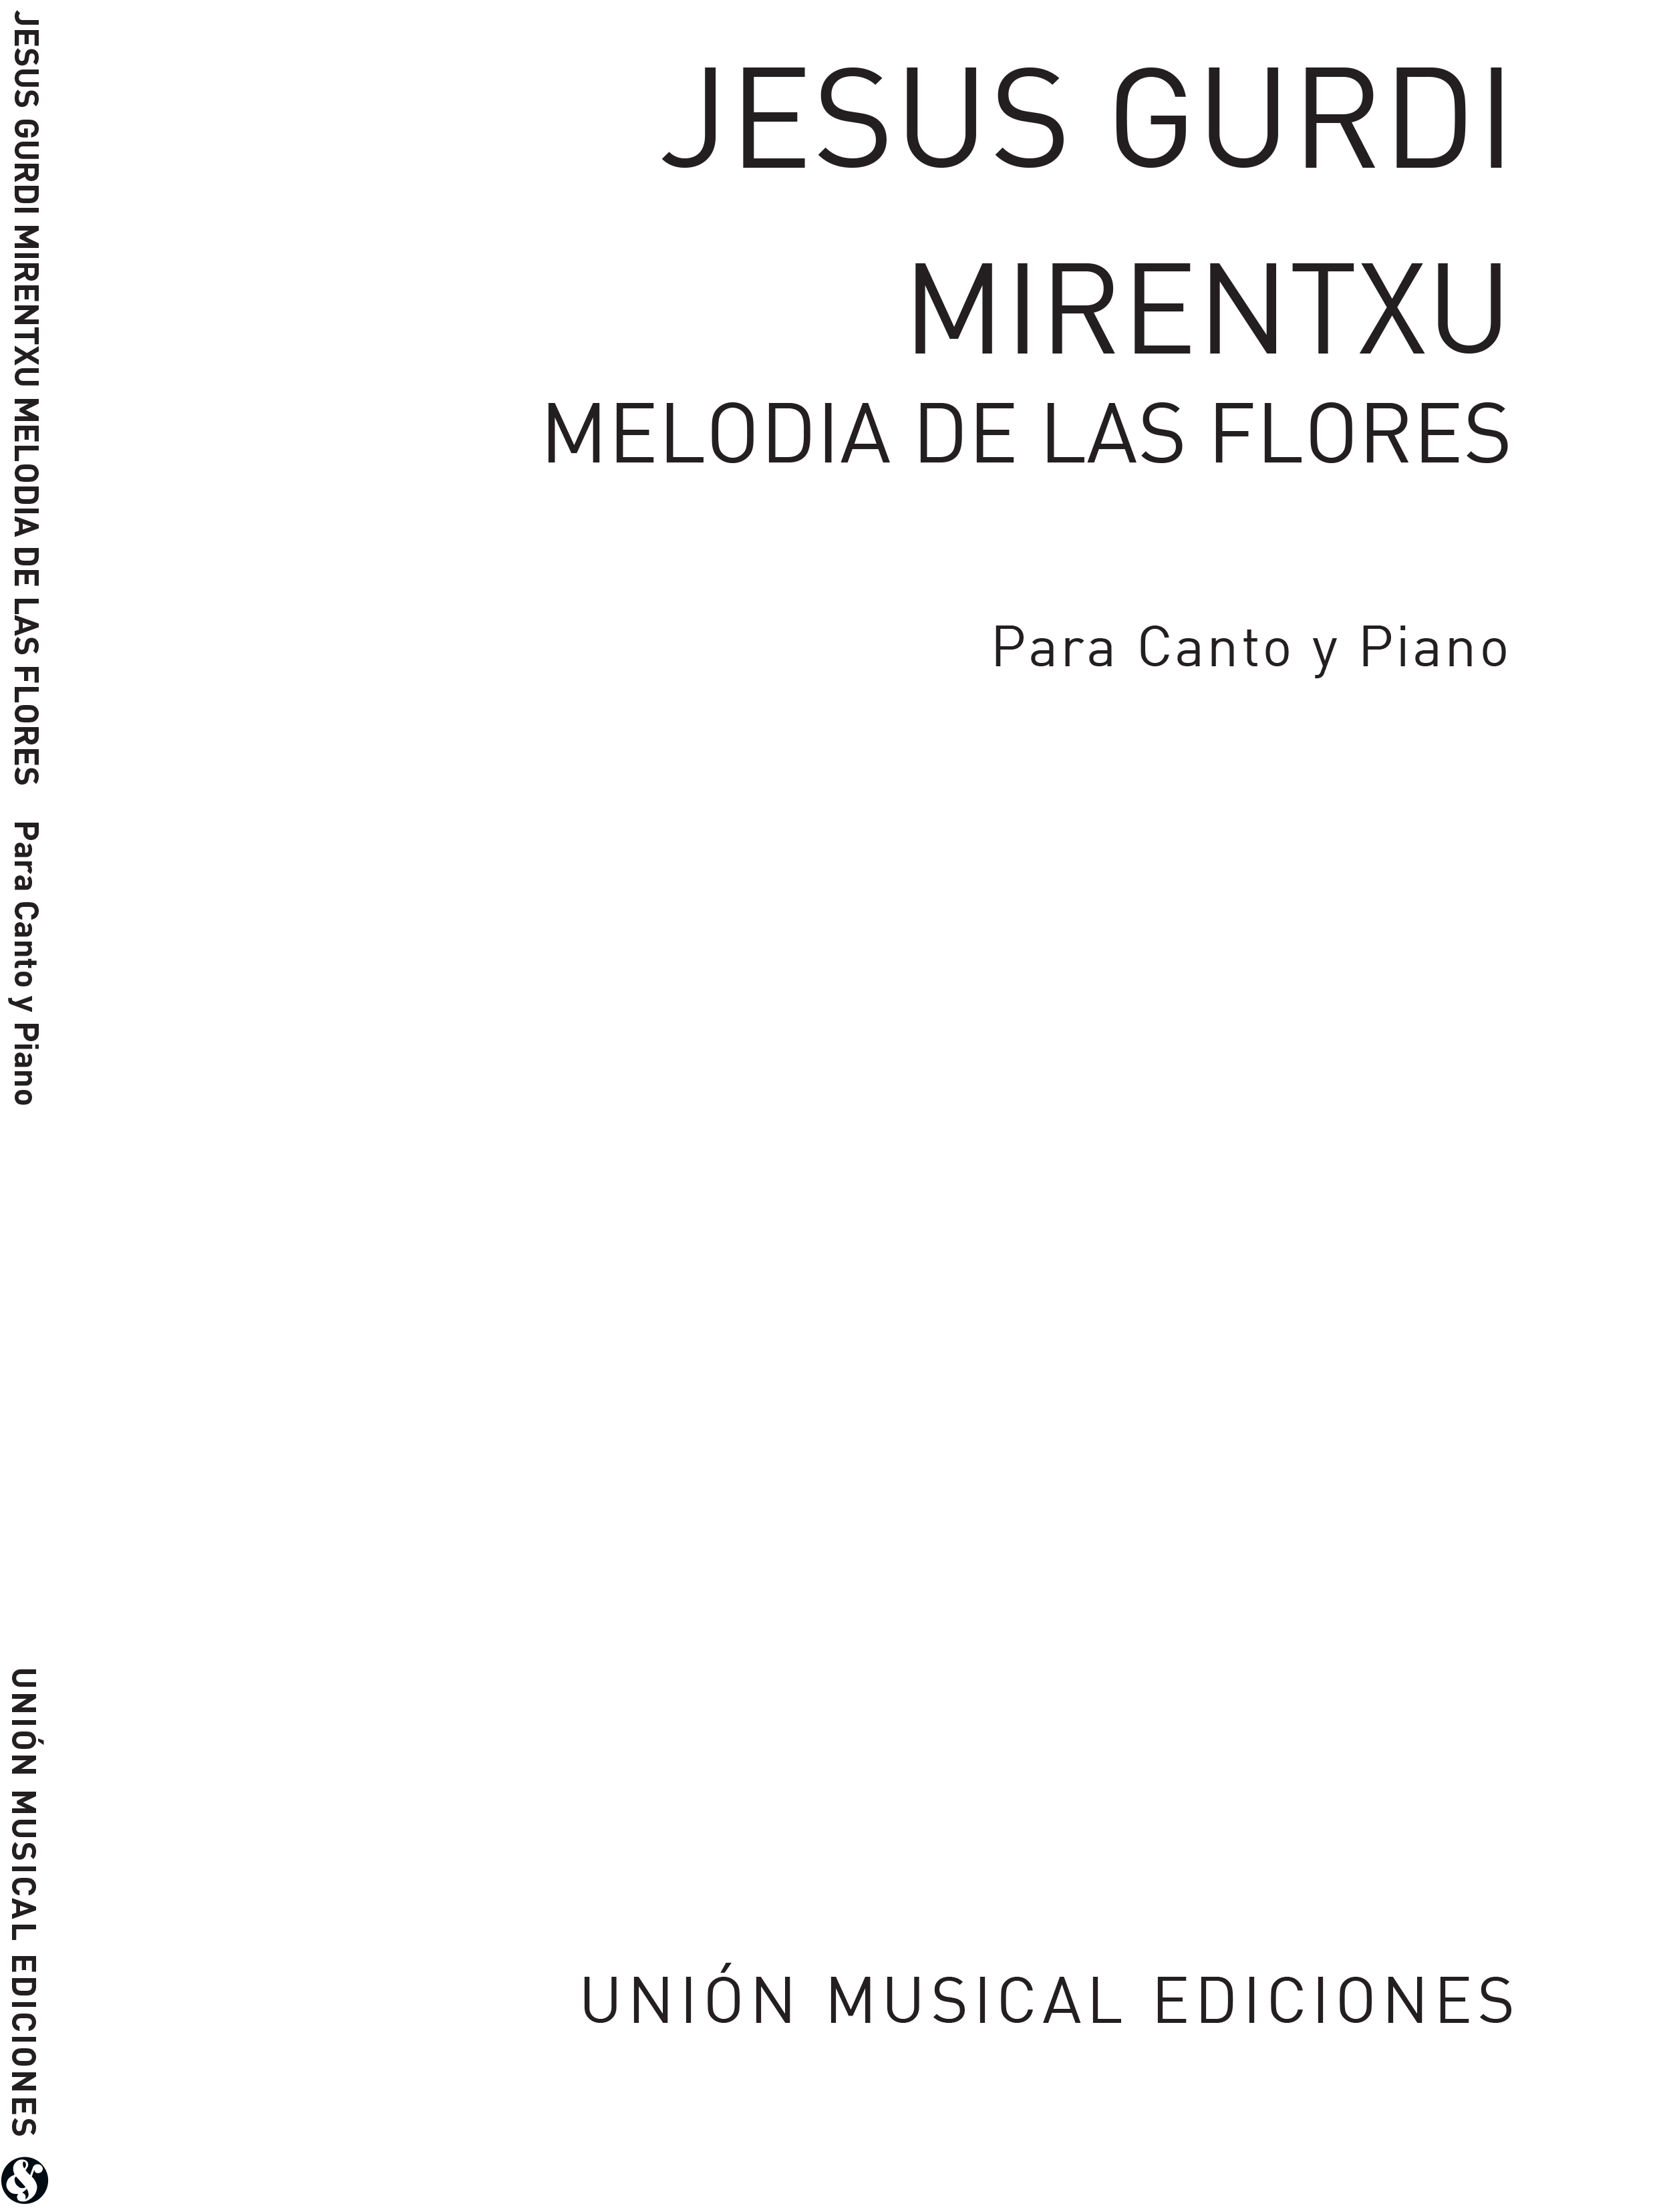 Jesus Guridi: Melodia De Las Flores De Mirentxu: Vocal